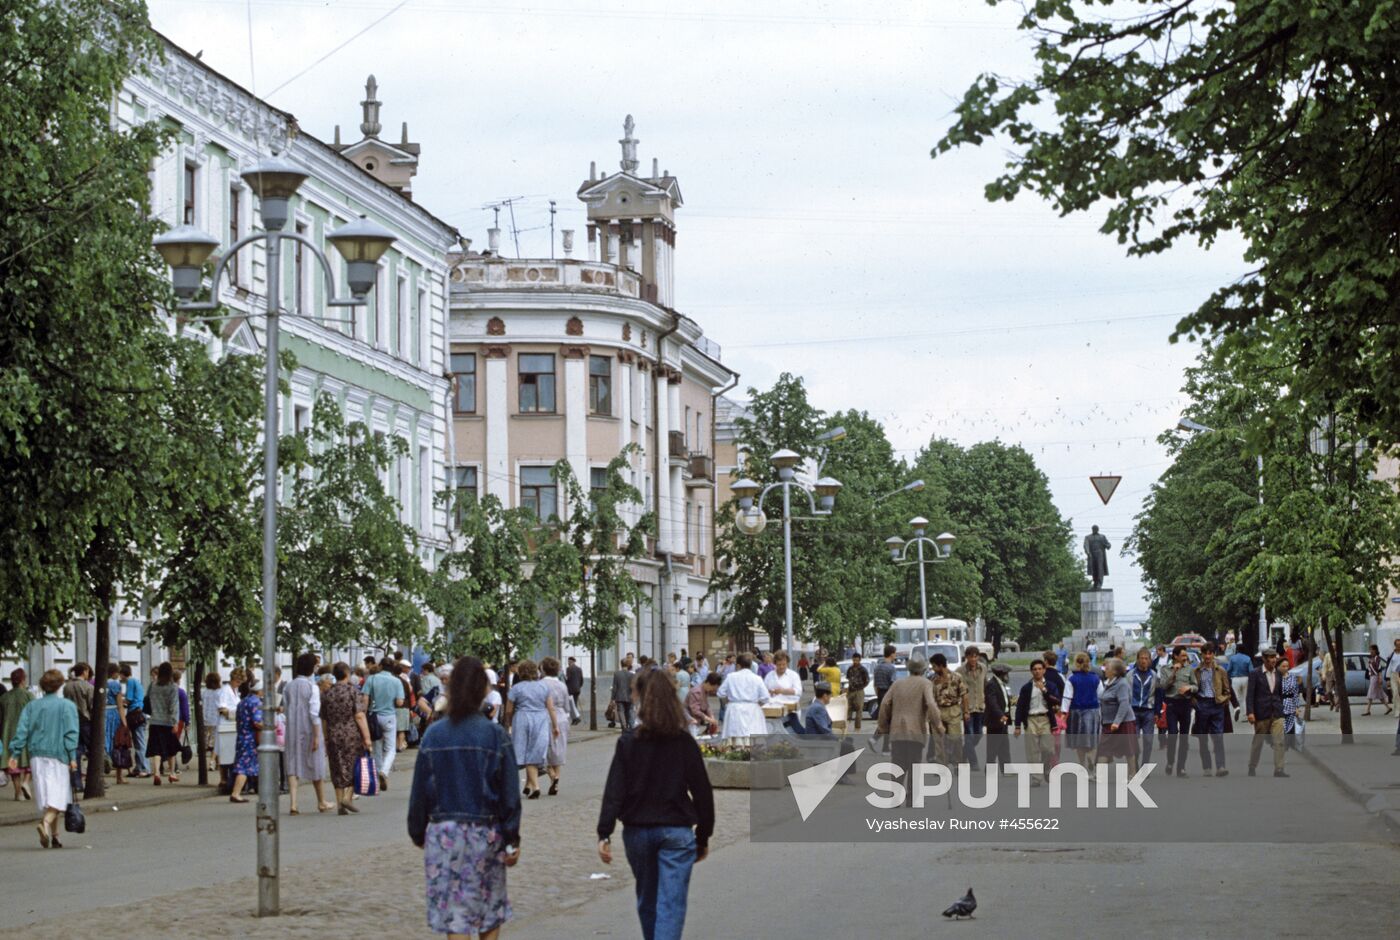 Tryokhsvyatskaya Street